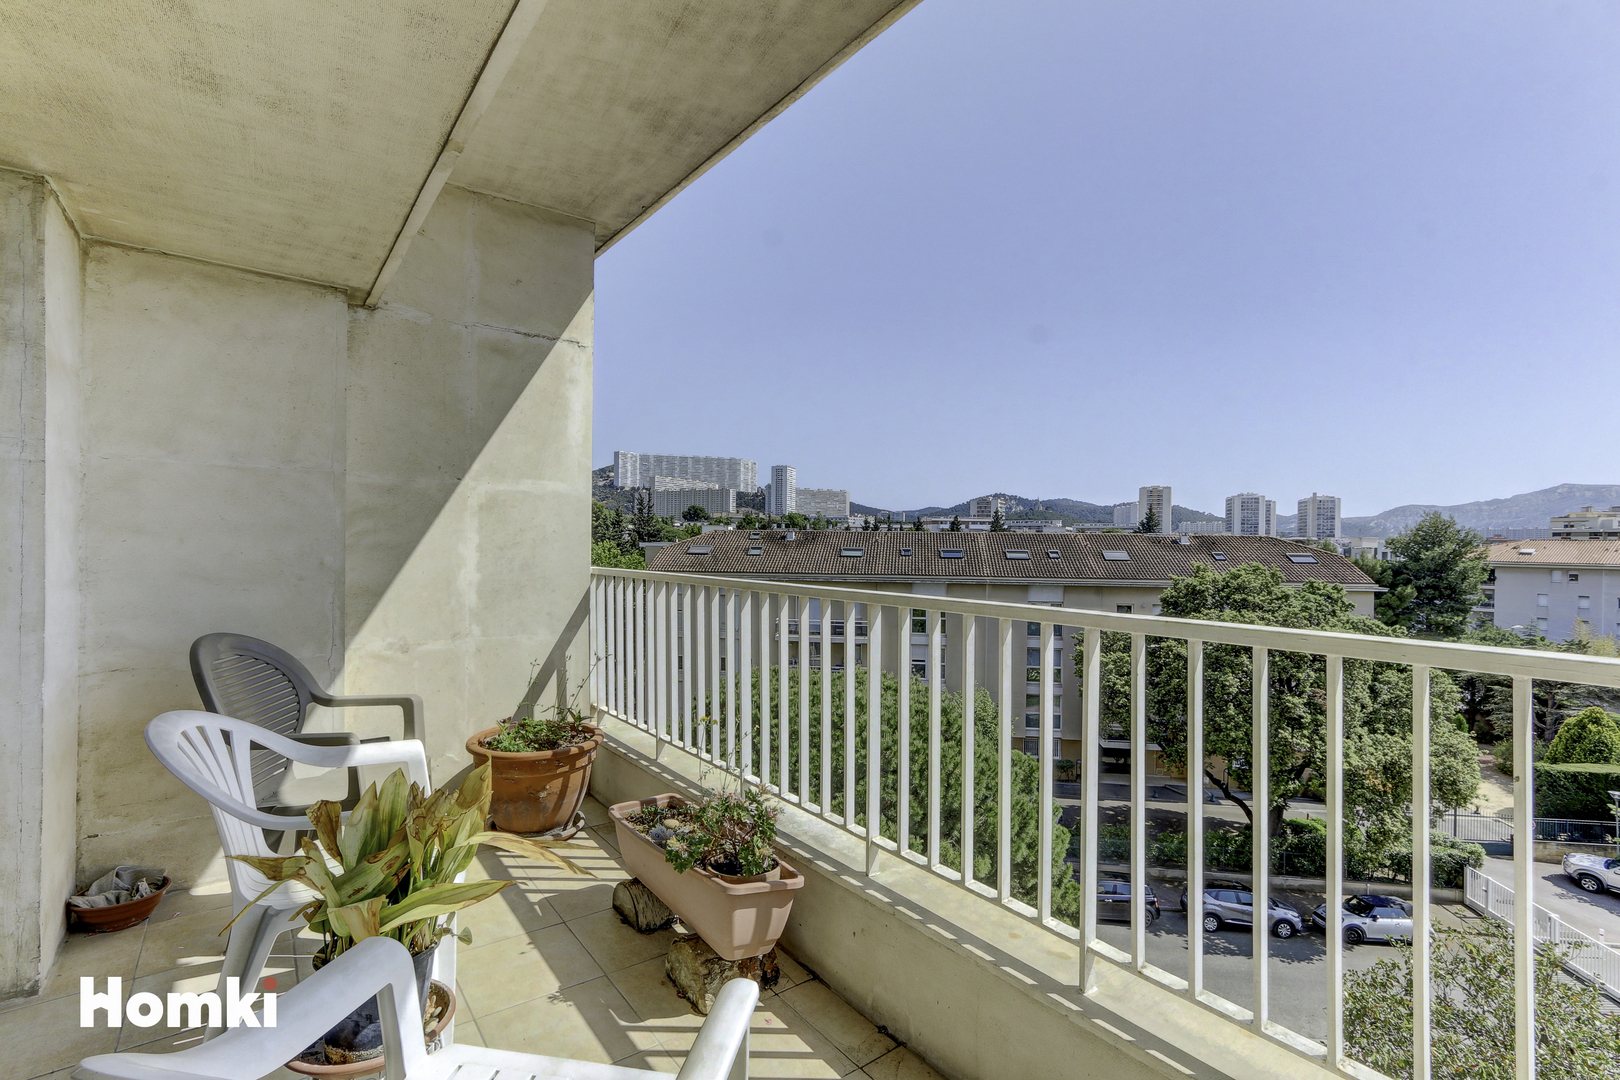 Homki - Vente Appartement  de 100.0 m² à Marseille 13009